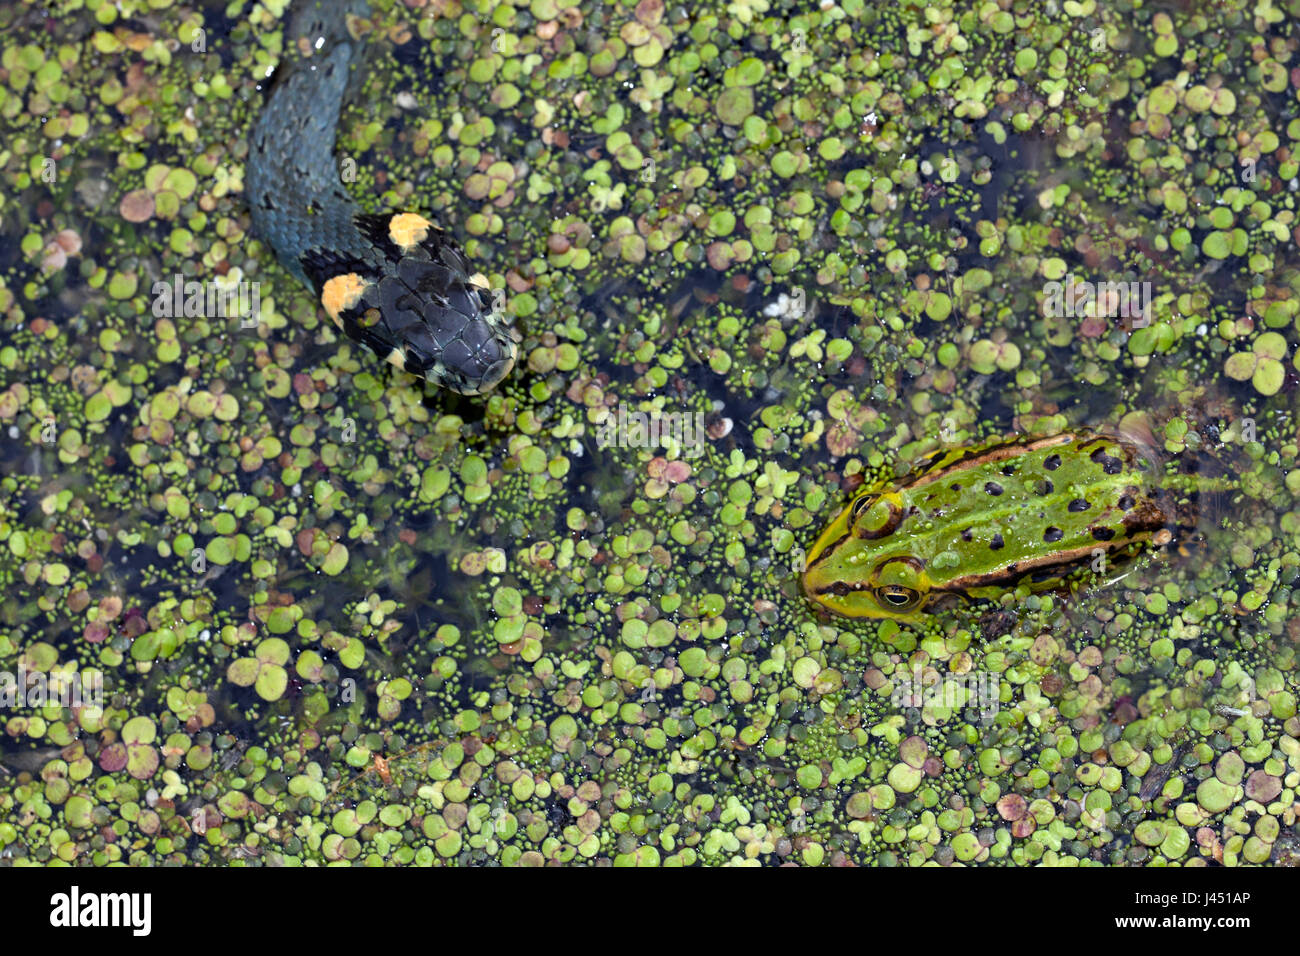 Couleuvre verte chasse grenouille dans les lentilles d'eau Banque D'Images